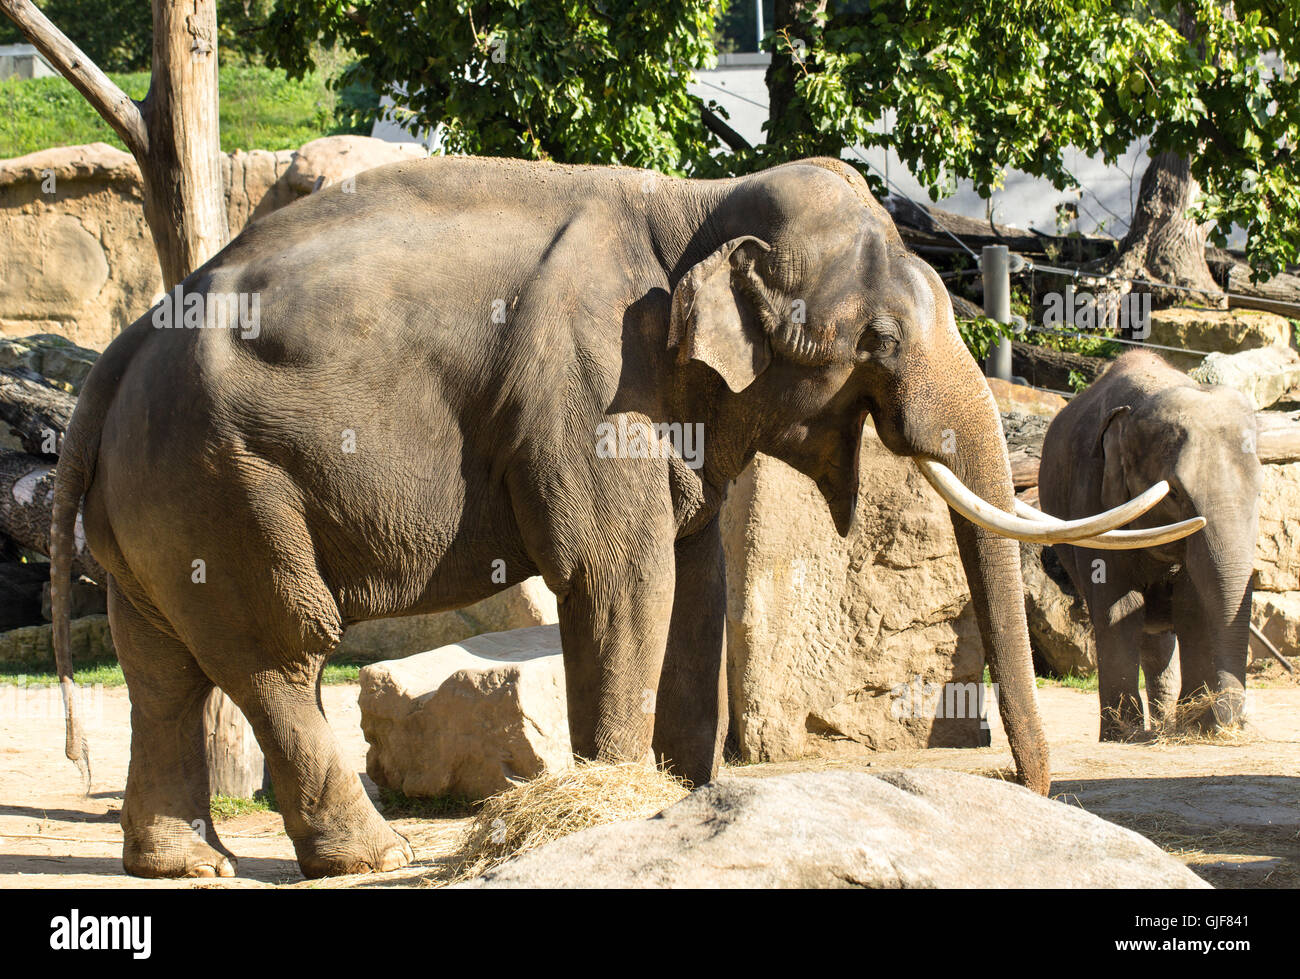 Elephant in zoo Stock Photo